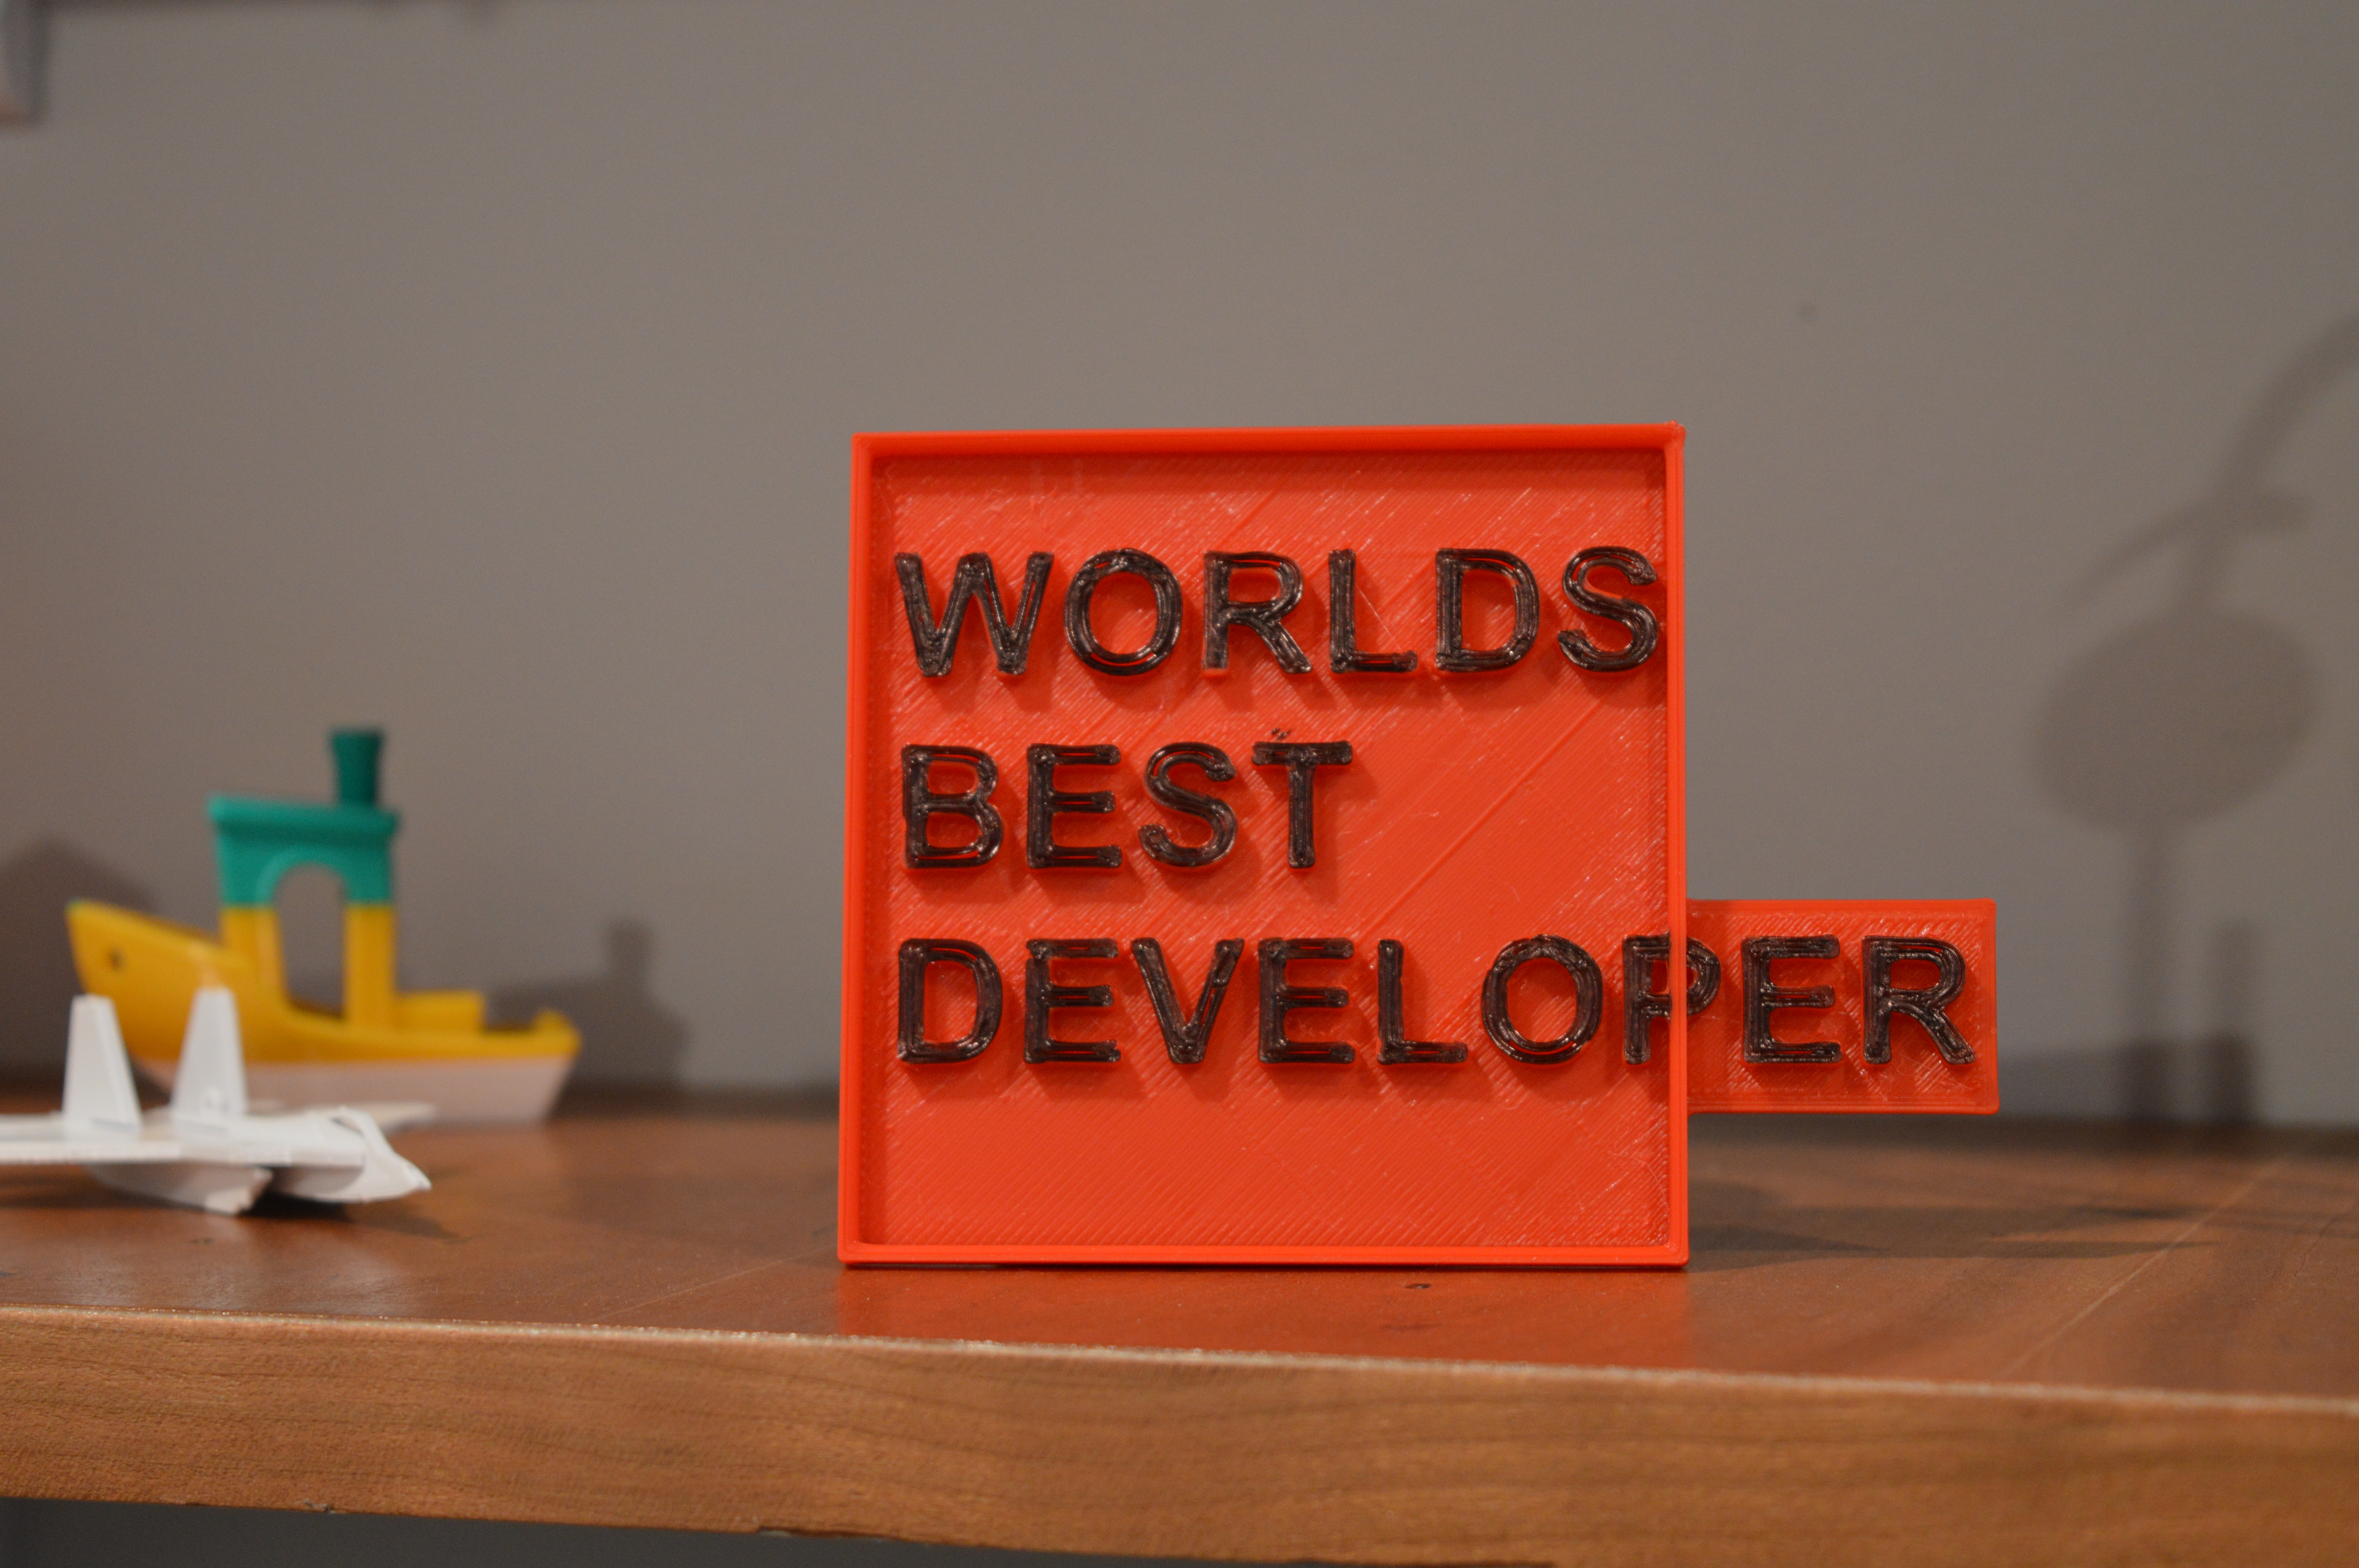 Worlds Best Developer